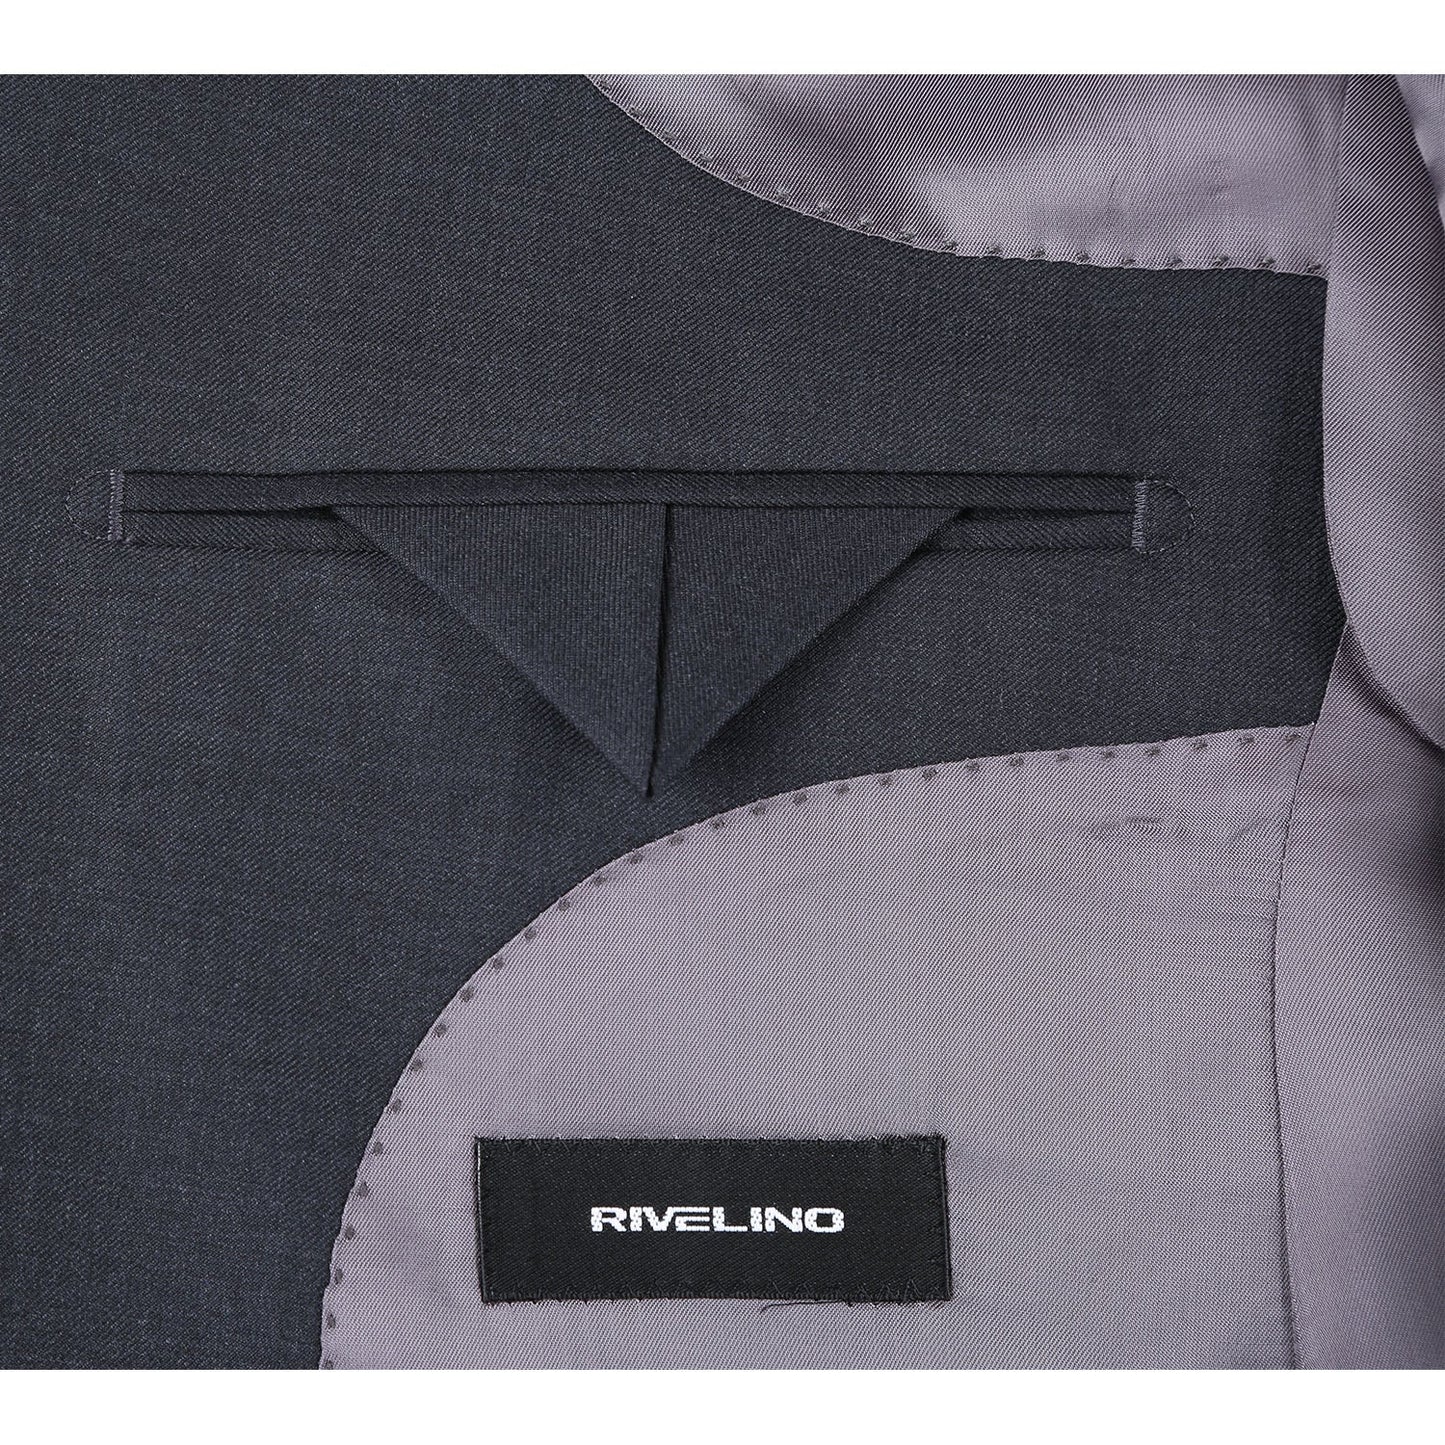 RHC100-3 Men's Charcoal Half-Canvas Super 150's Suit by Rivelino